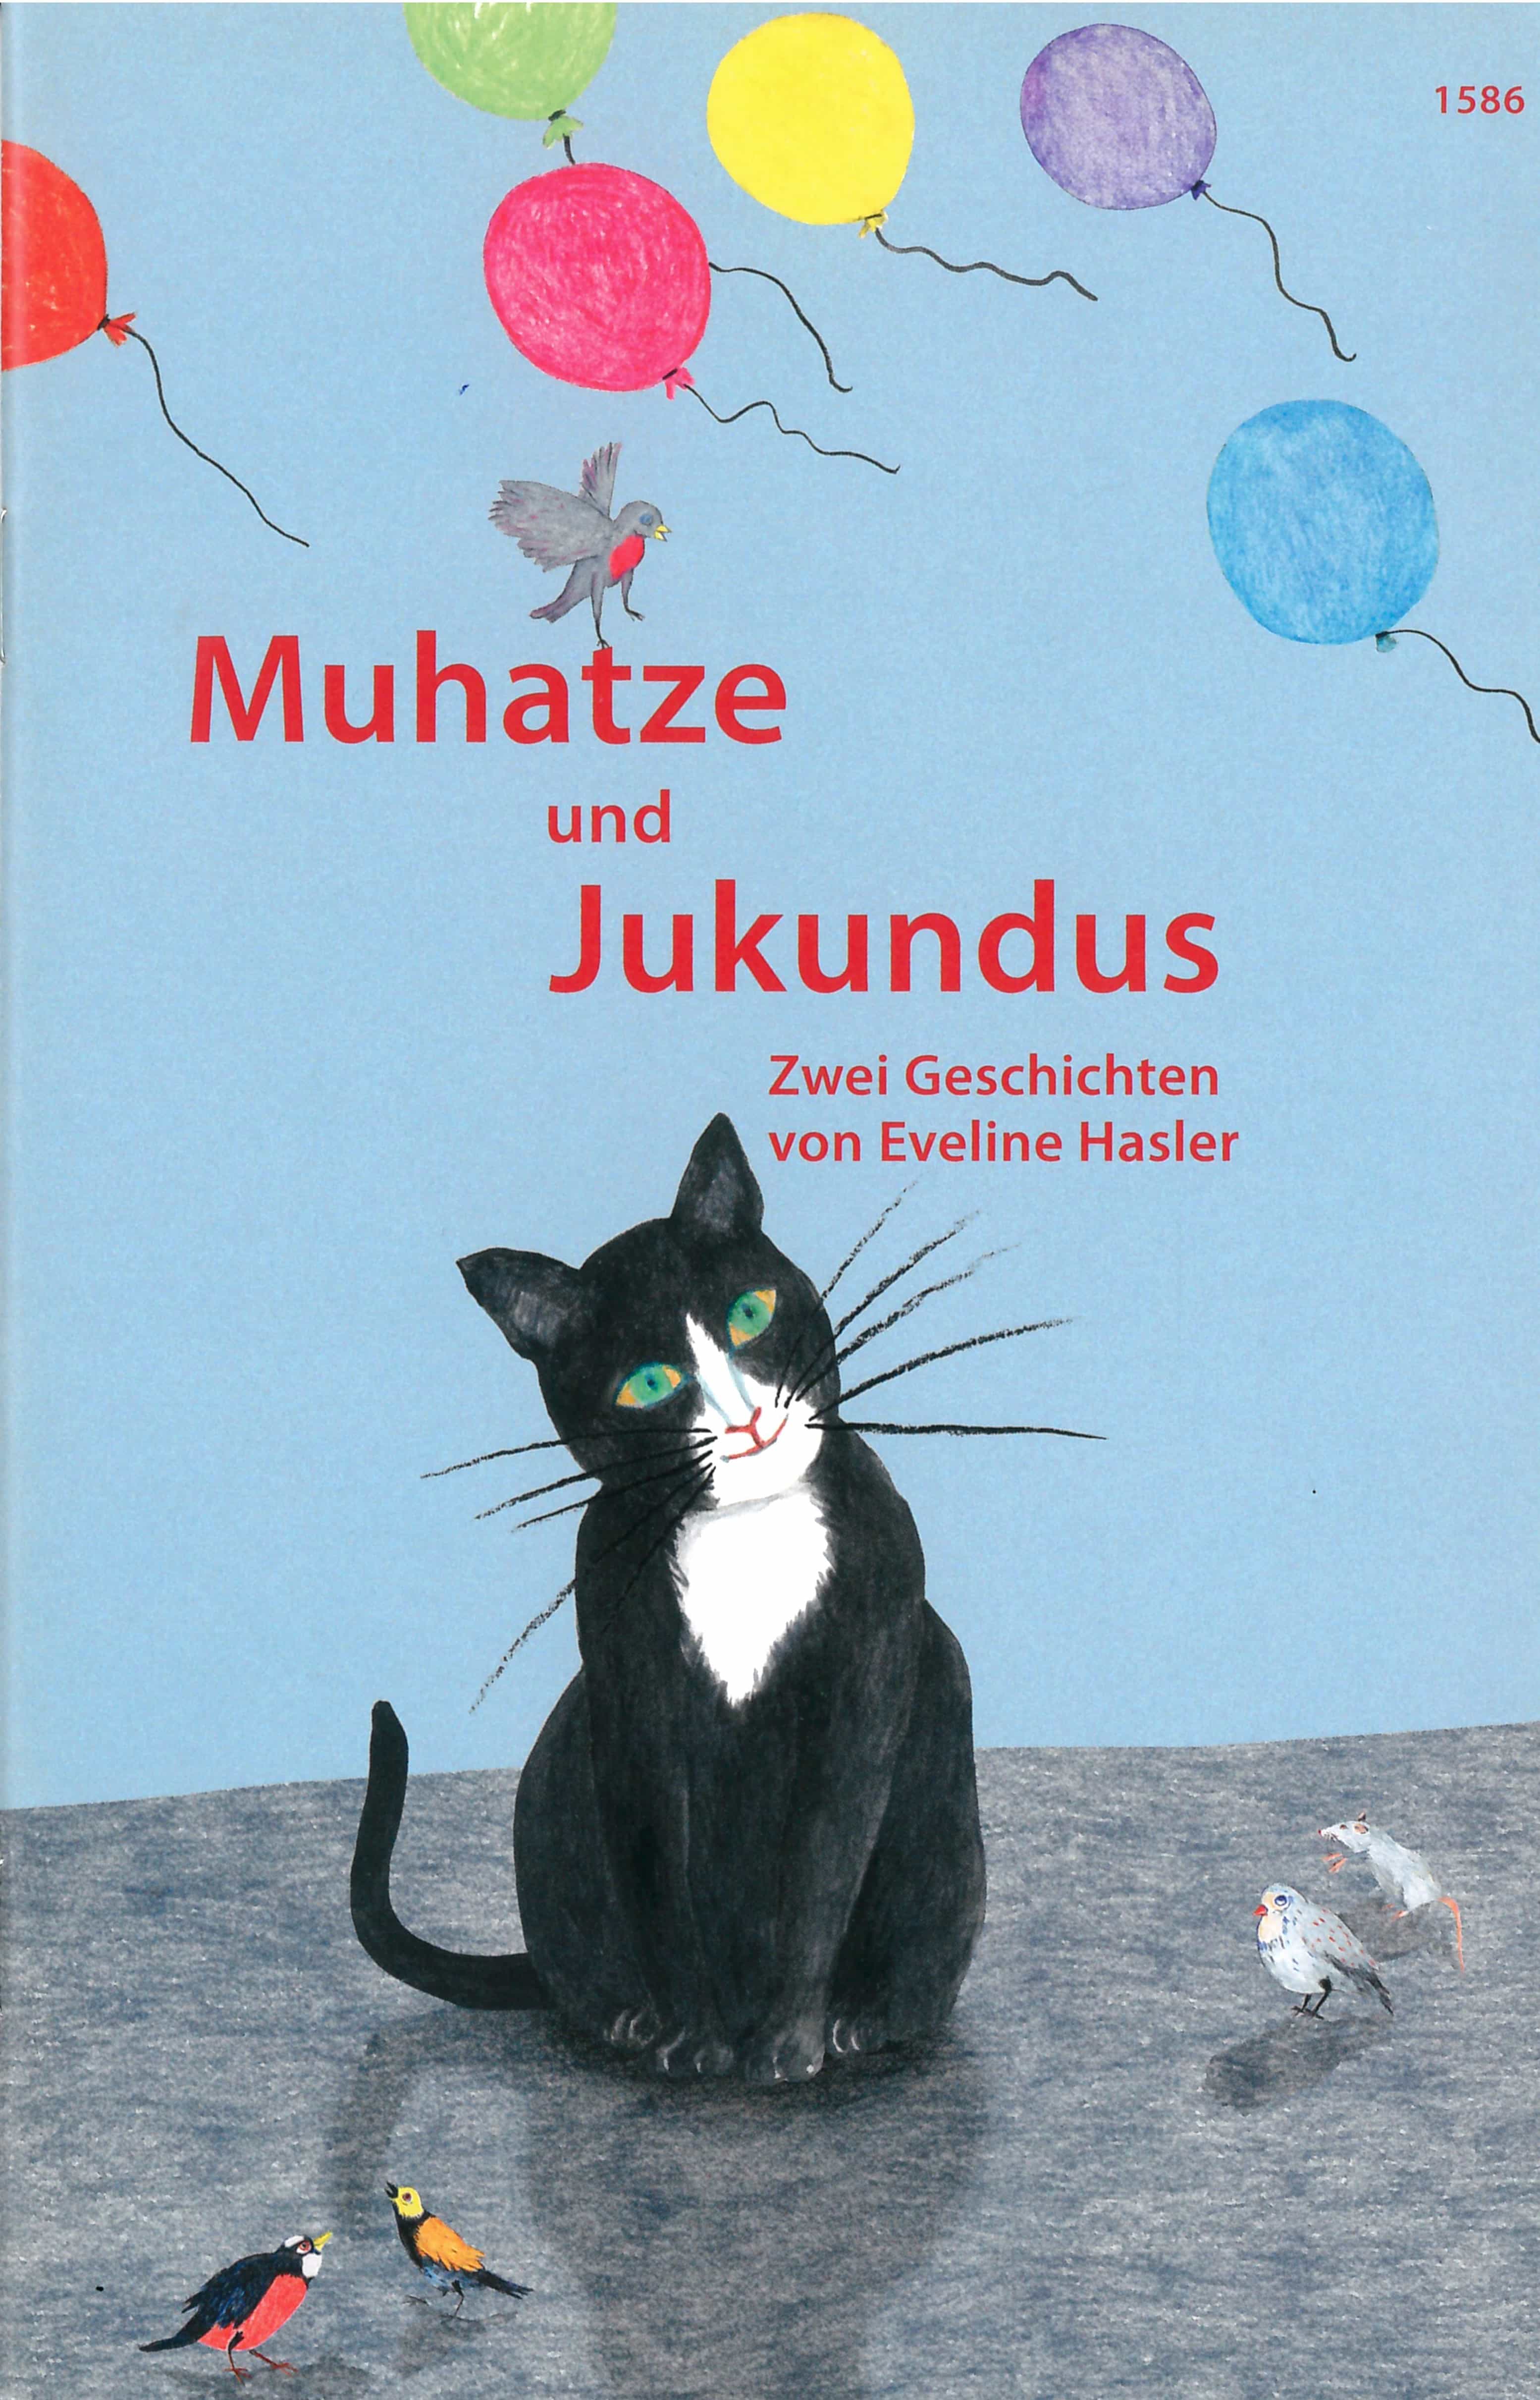 Muhatze und Jukundus, ein Kinderbuch von Eveline Hasler, Illustration Manda Schum, SJW Verlag, Bilderbuchklassiker